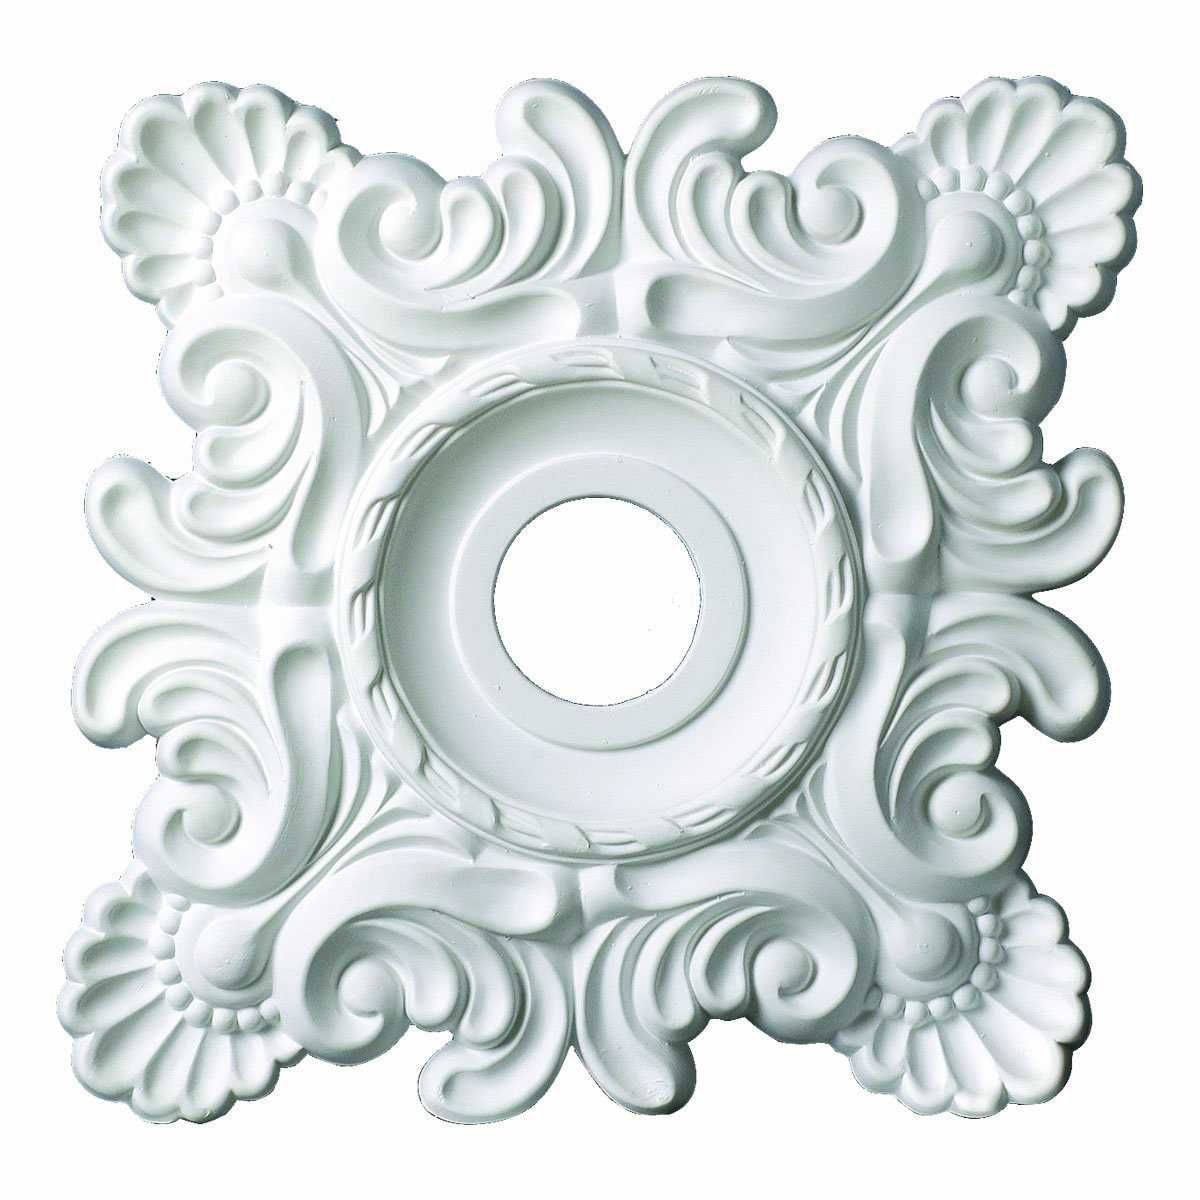 Designer's Edge Millwork 18-inch Square Decorative Ceiling Medallion